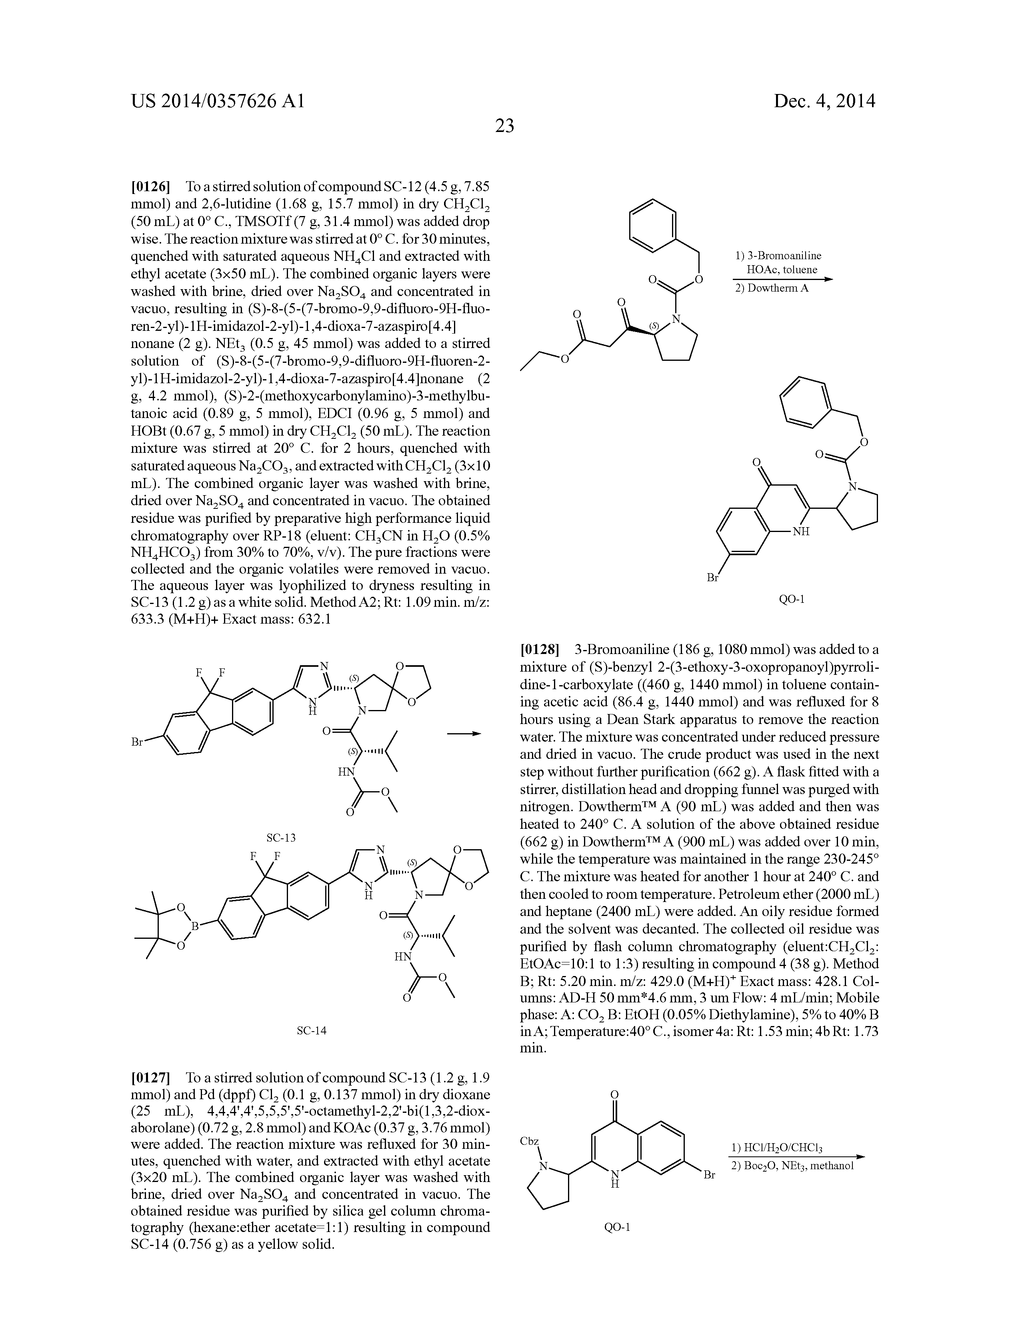 Hetero-Bicyclic Derivatives As HCV Inhibitors - diagram, schematic, and image 24